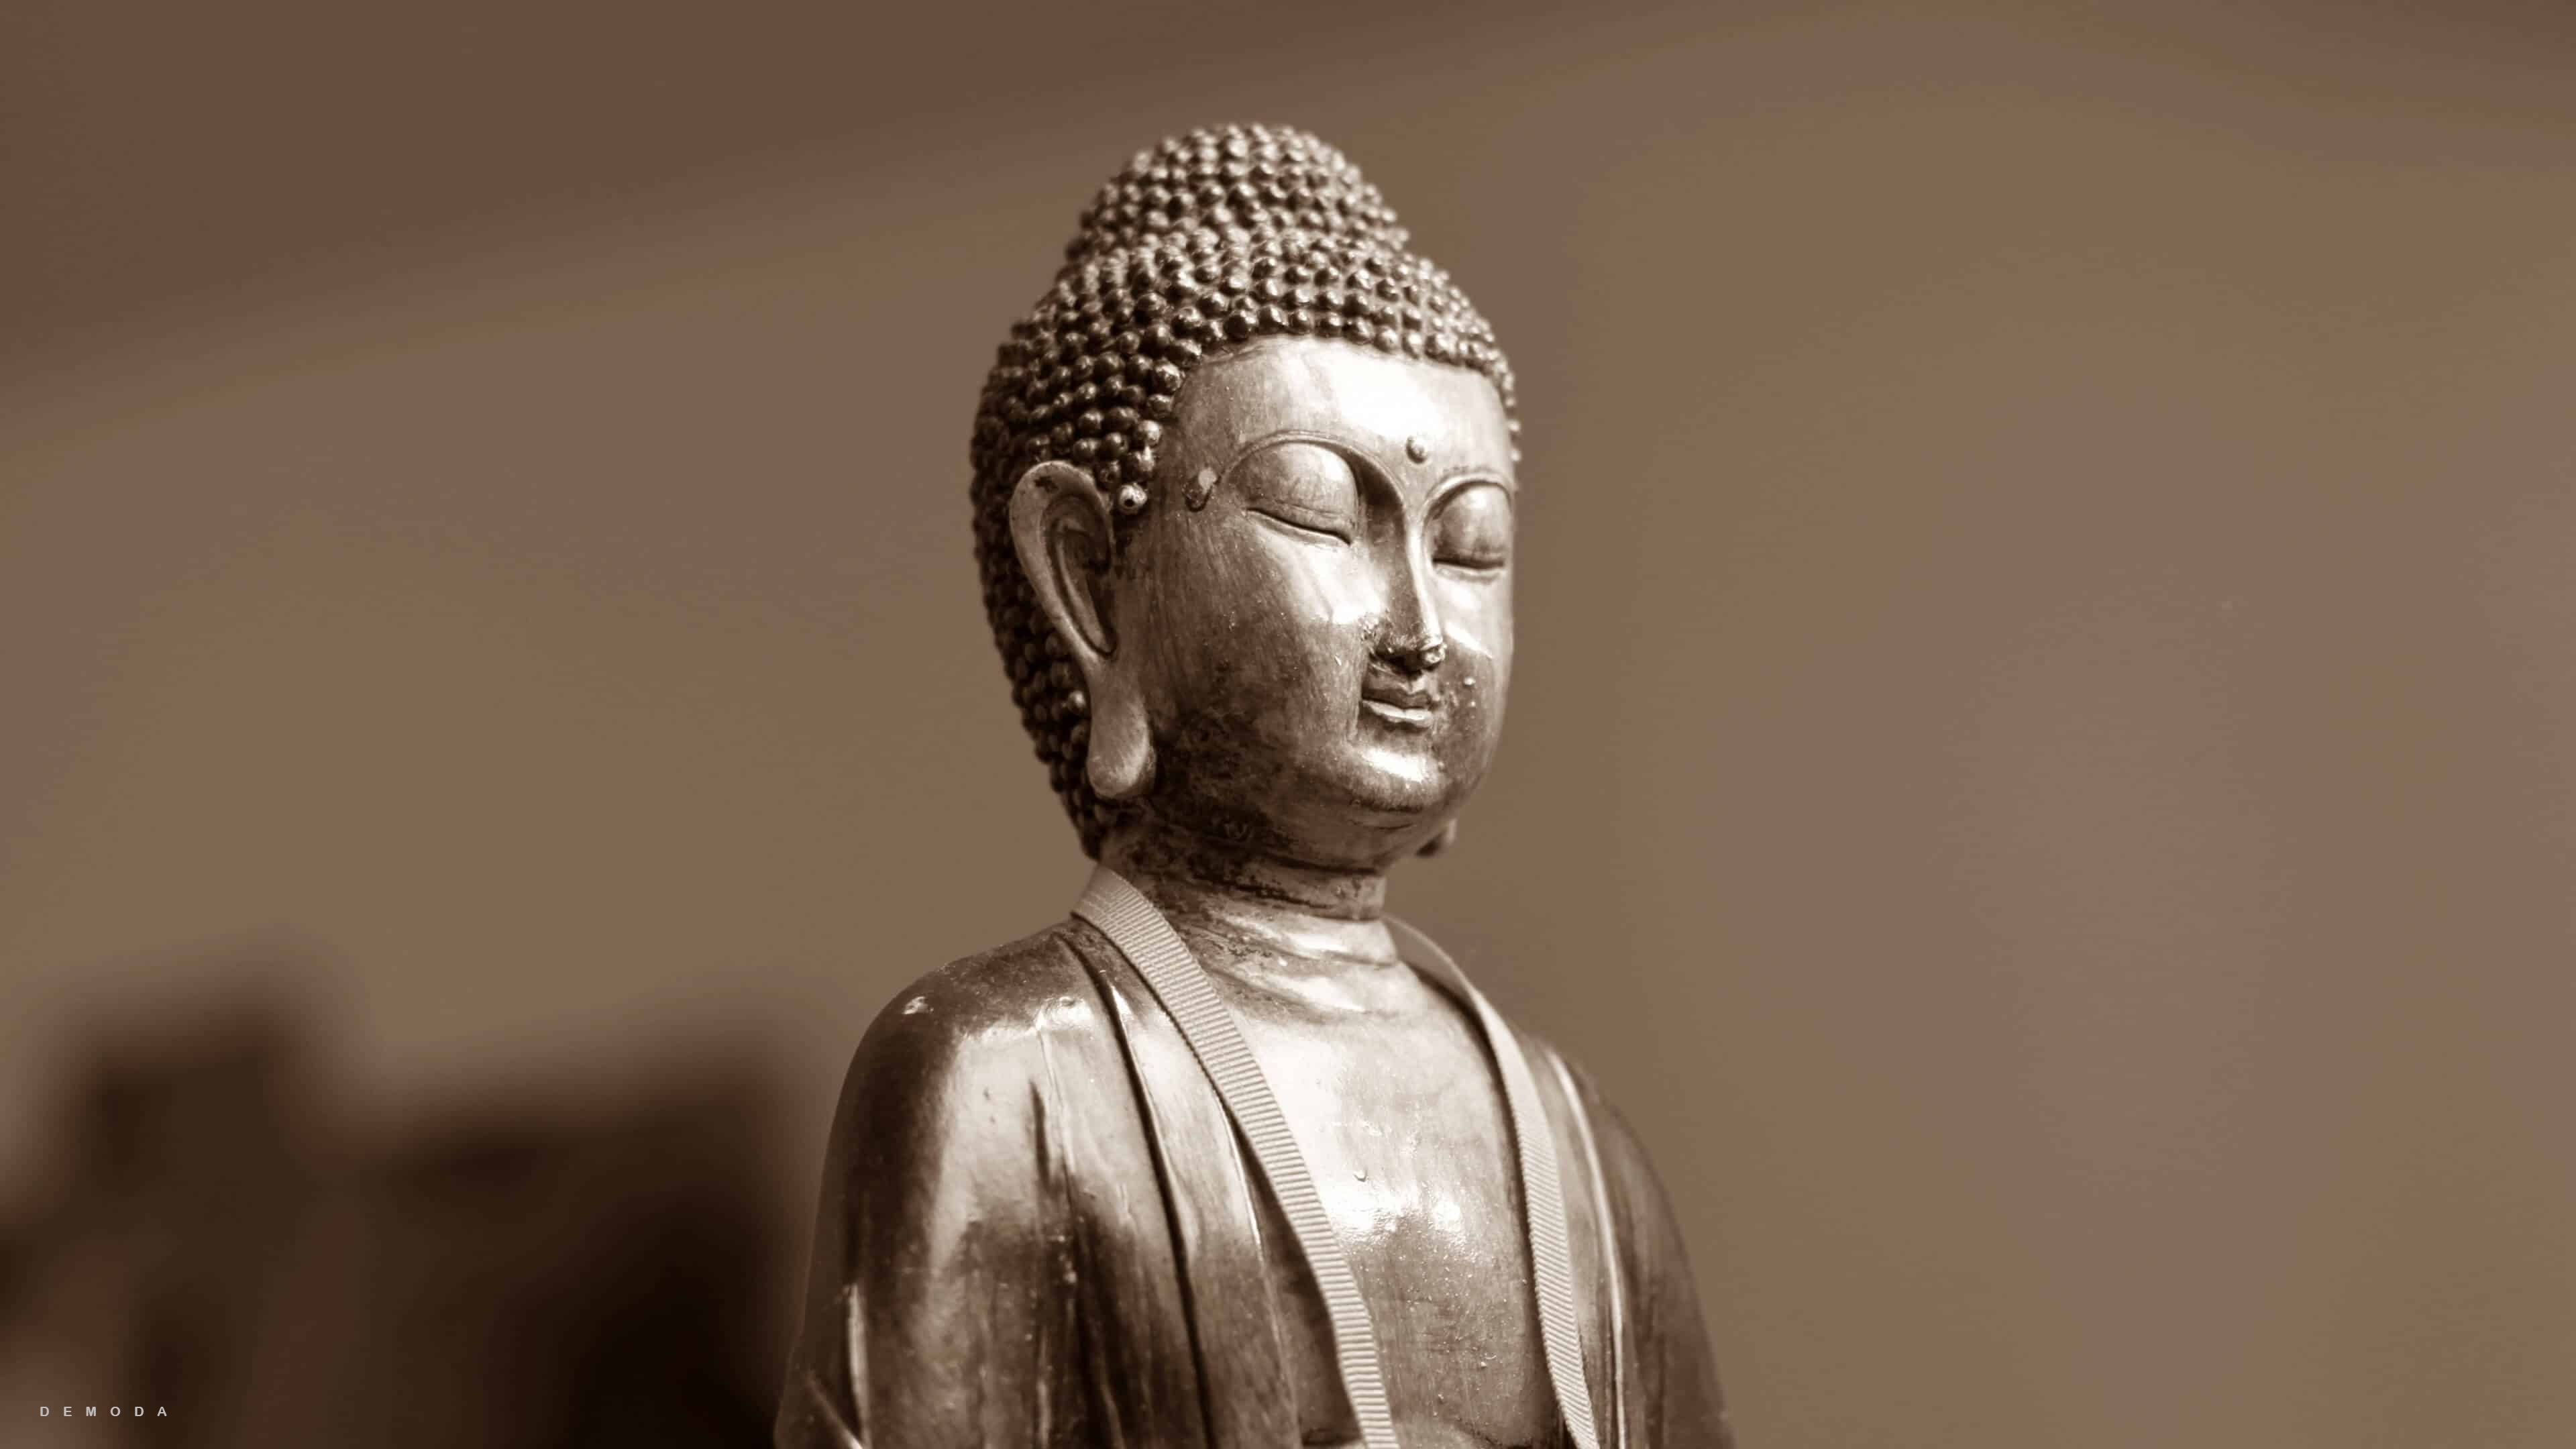 Hình nền Phật 4k là một tác phẩm nghệ thuật đẹp mắt và tinh xảo. Được chế tác với chất lượng hình ảnh siêu nét, bạn sẽ được trải nghiệm cảm giác tuyệt vời như đang đặt chân vào các địa danh linh thiêng của Phật giáo. Hãy thưởng thức ngay để tìm kiếm sự bình an và sự tĩnh lặng trong cuộc sống.